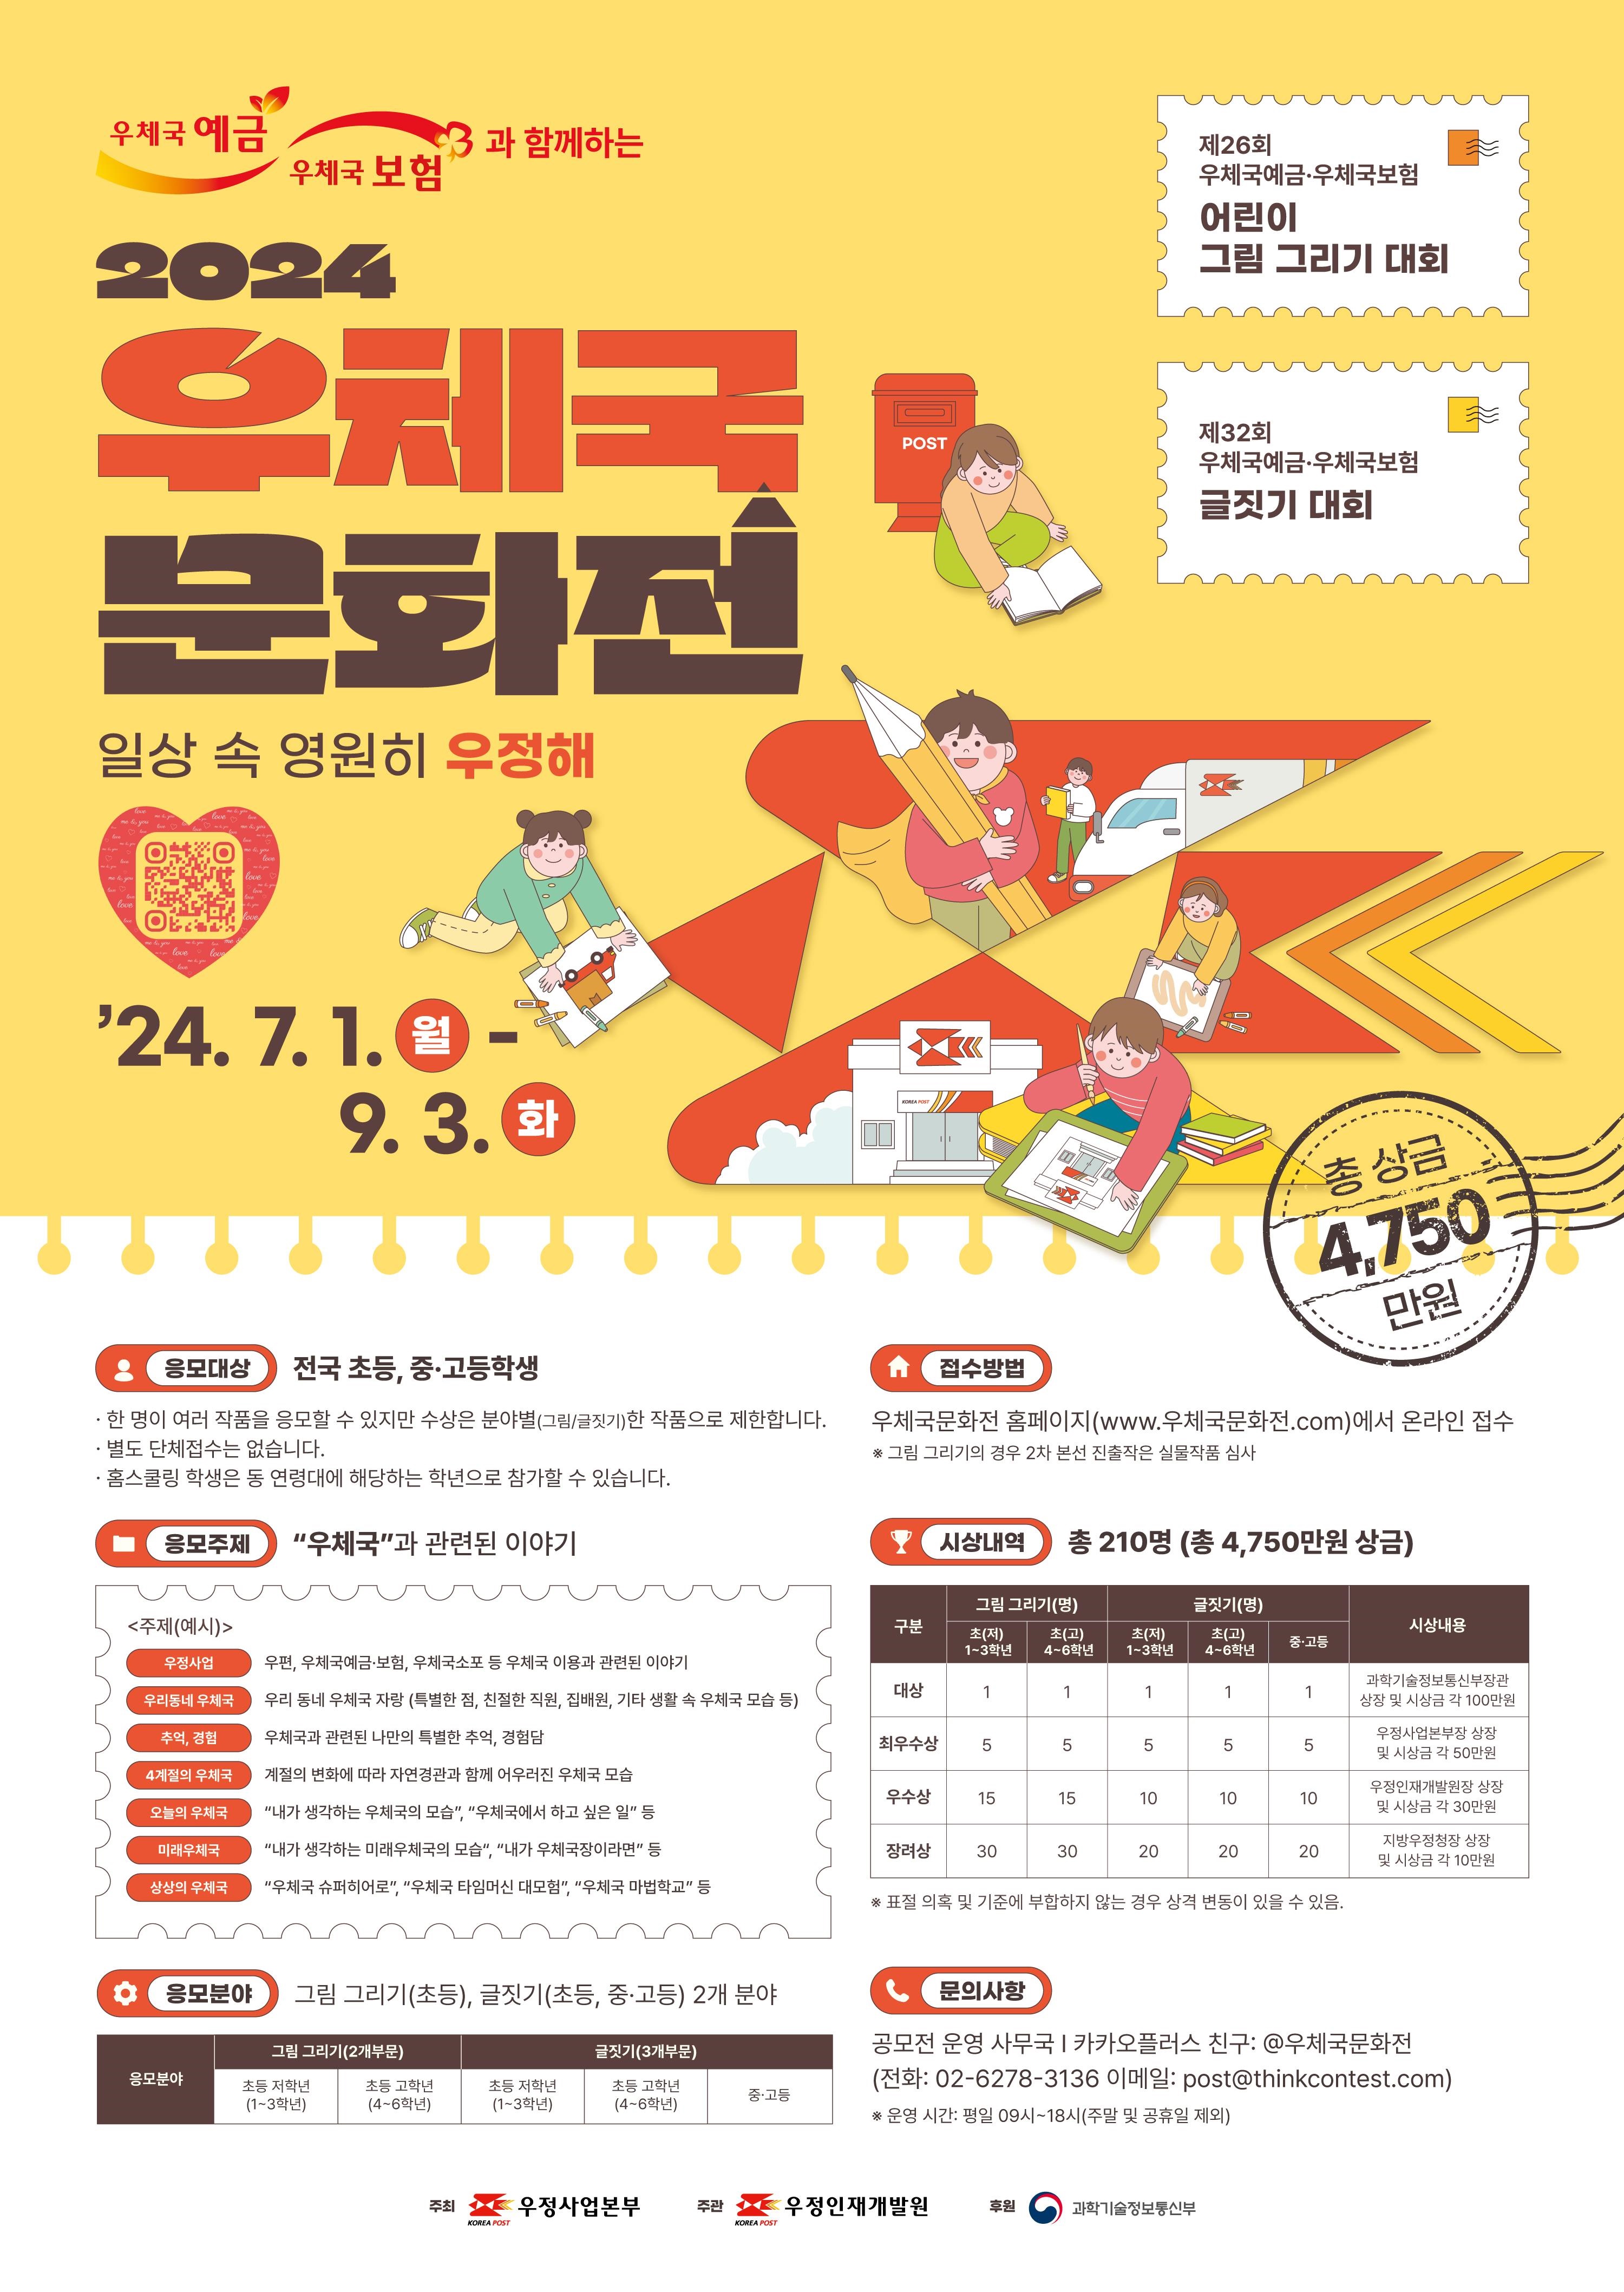 우정인재개발원이 7월 1일부터 9월 3일까지 전국 초·중·고교생을 대상으로 ‘2024 우체국 문화전’을 개최한다.